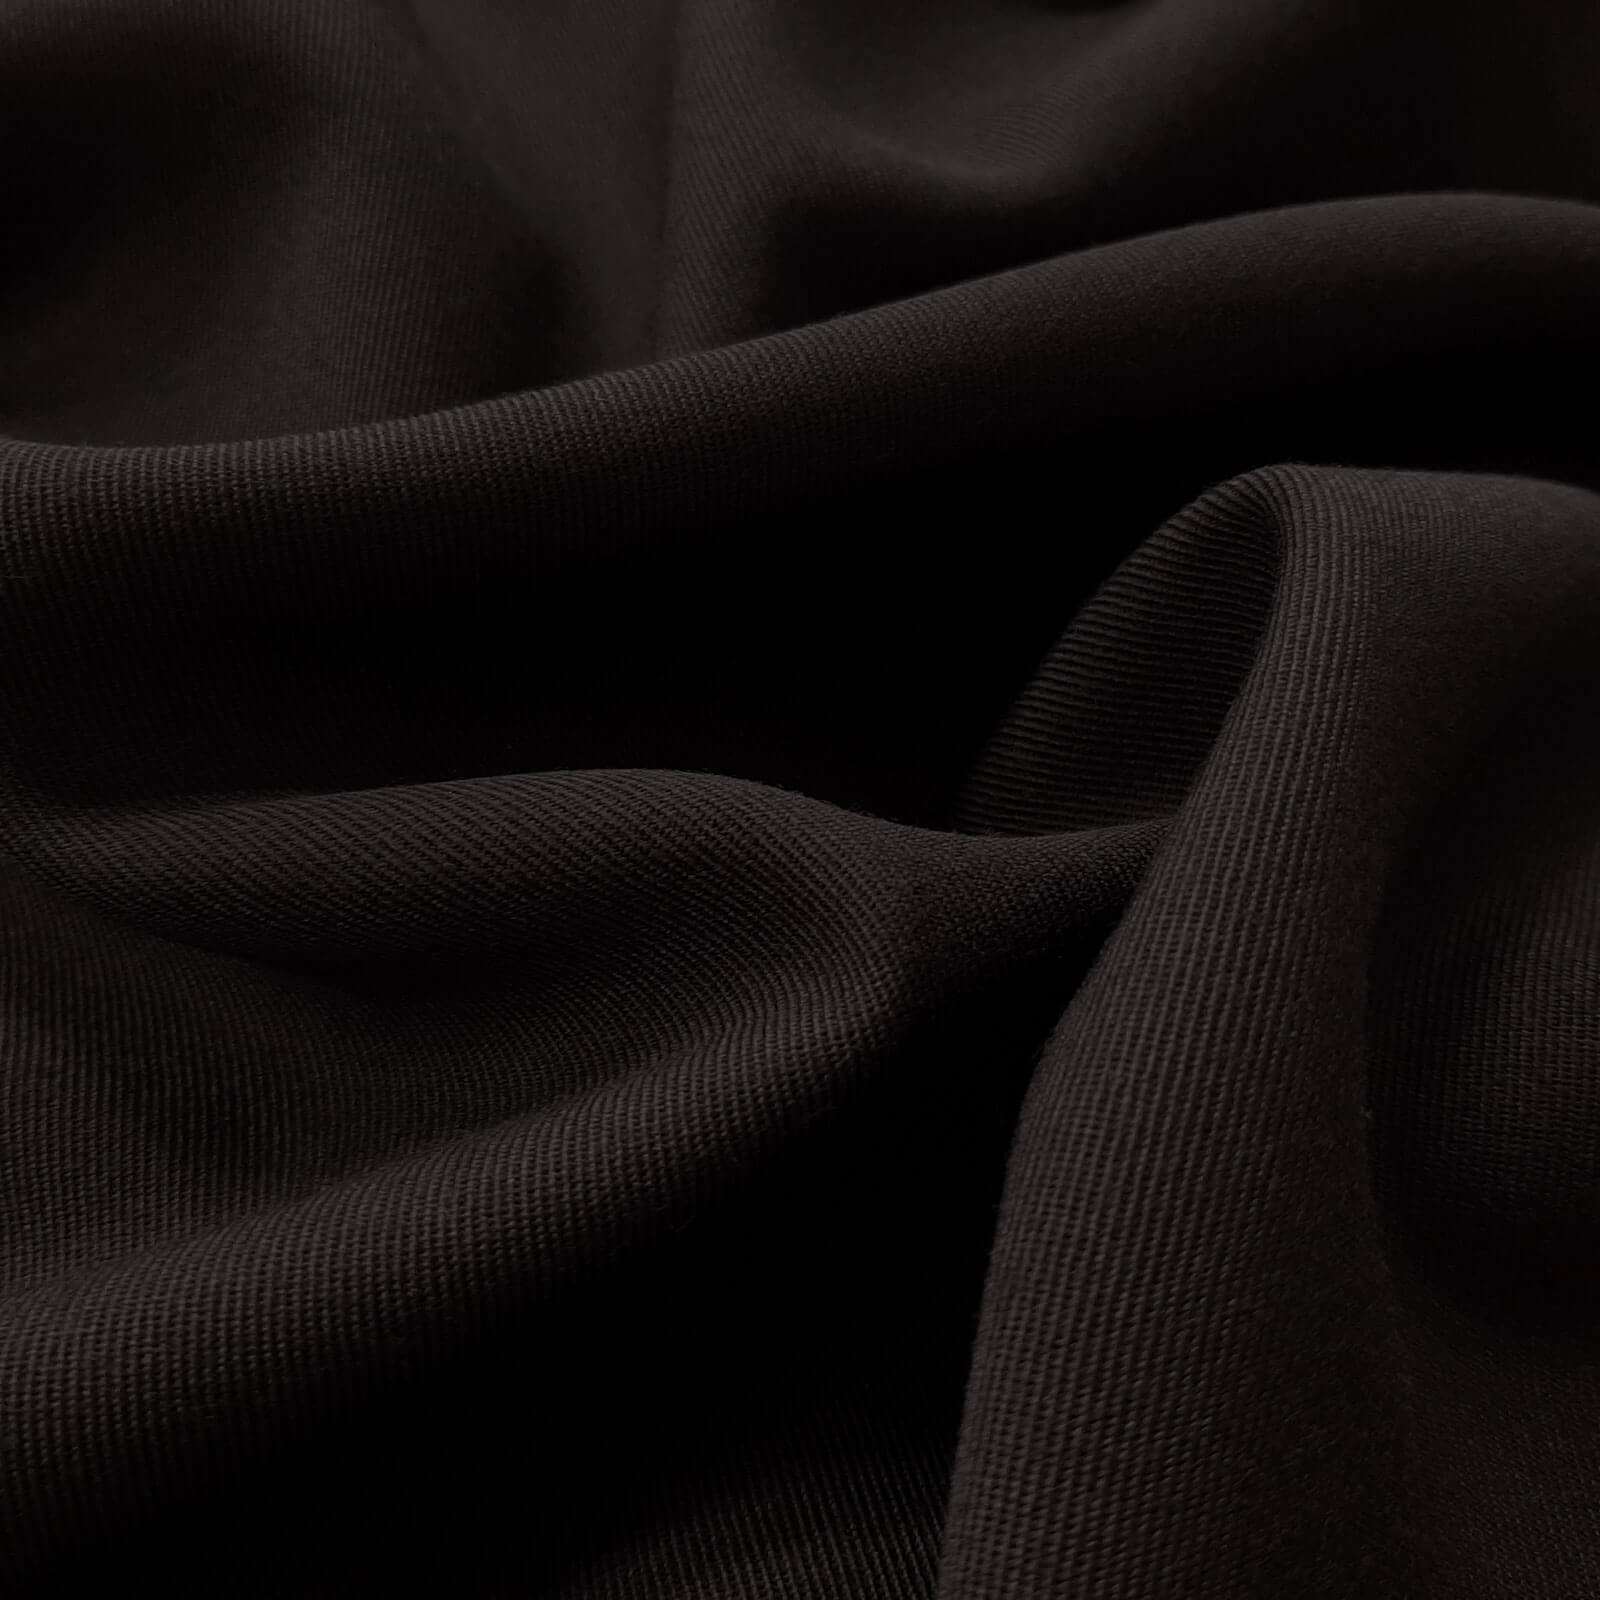 Frisko - Drap de laine 100% laine vierge / Drap d'uniforme - Noir 